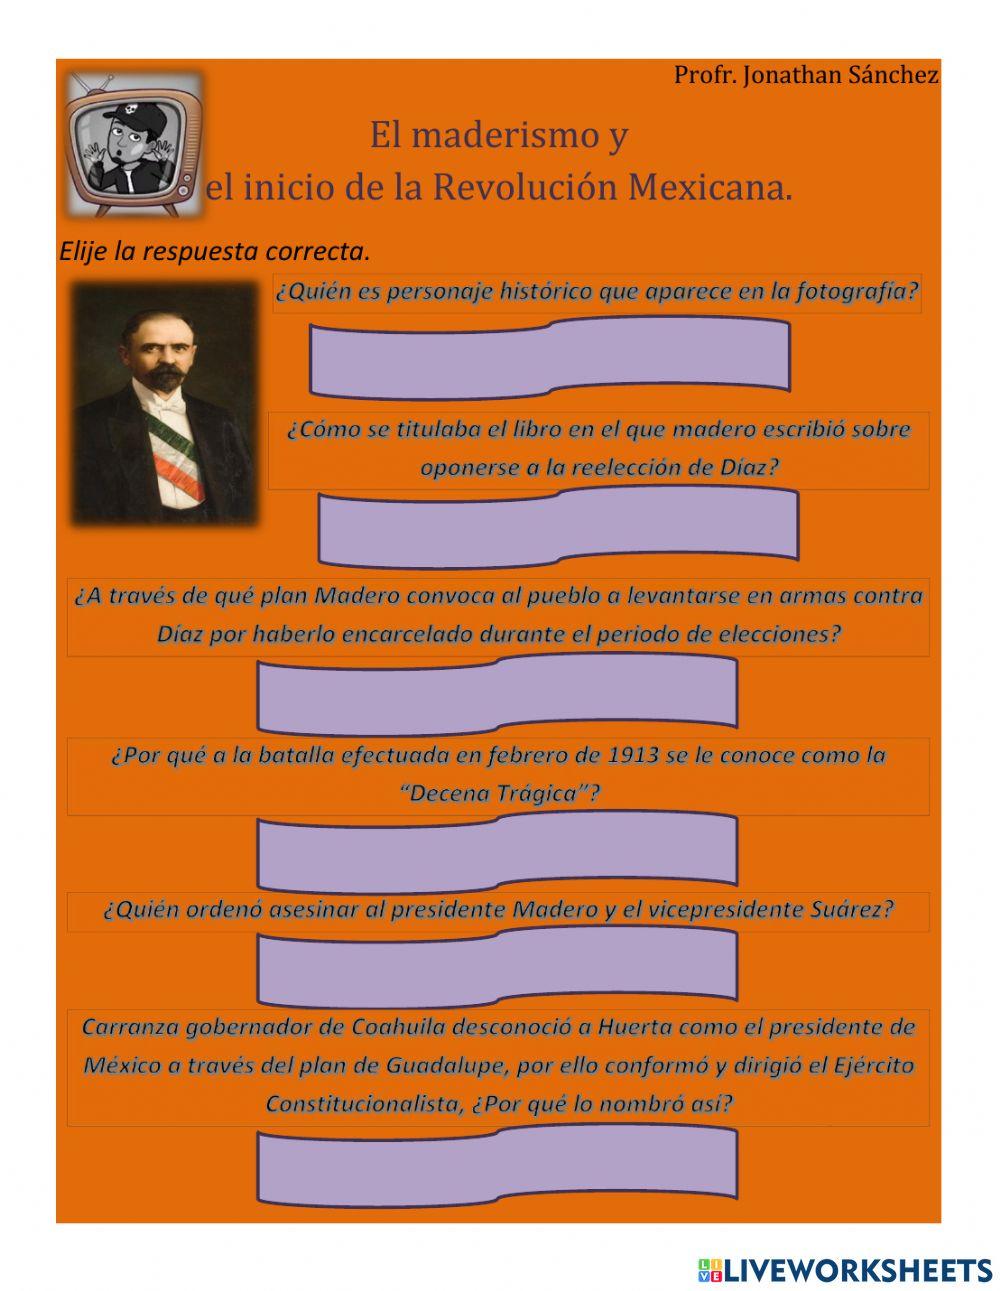 El Maderismo y el inicio de la Revolución Mexicana.